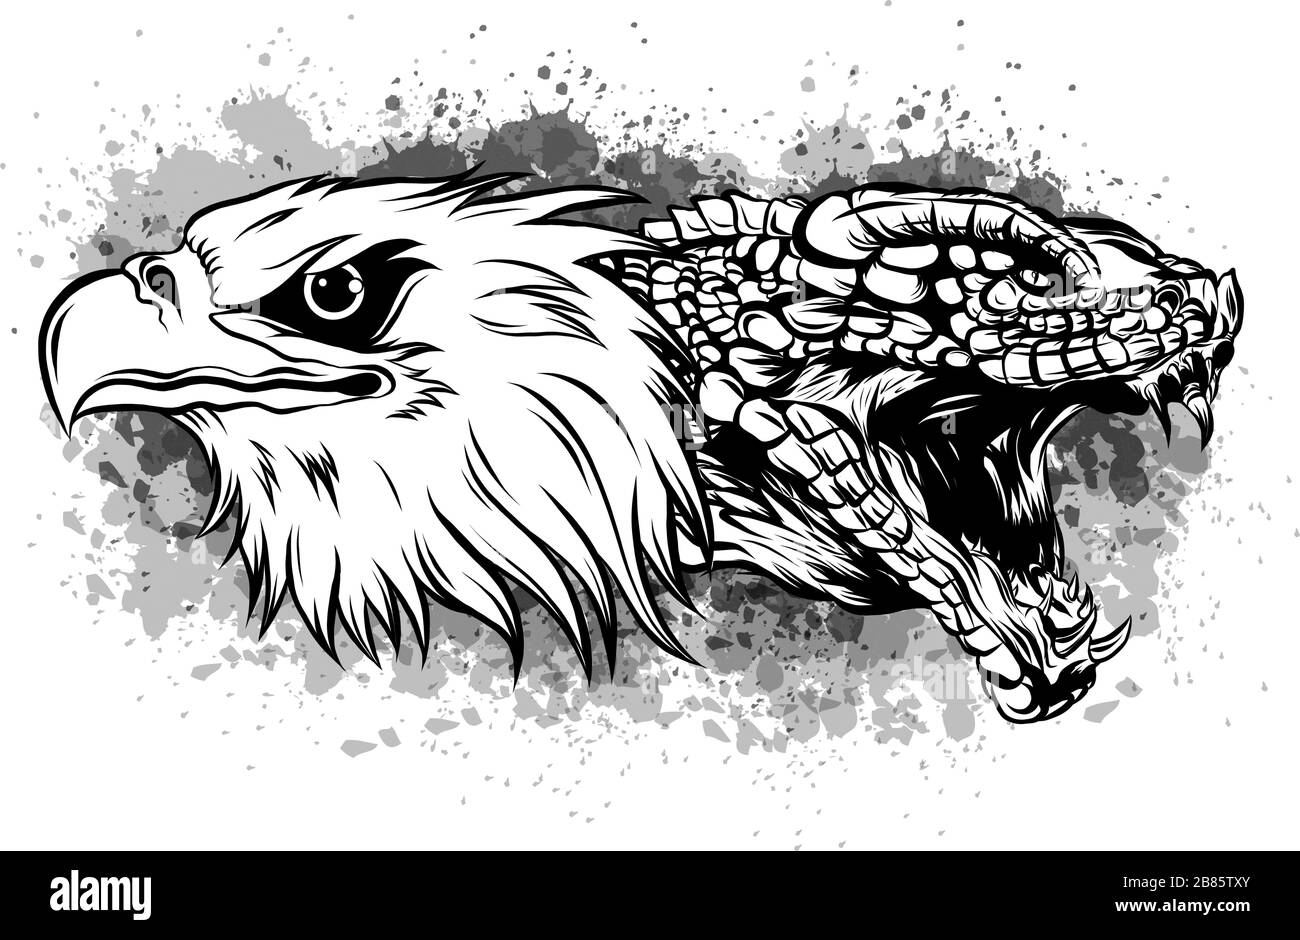 Adler kämpft gegen eine Schlange . Tattoo-Stil-Vektor Stock Vektor